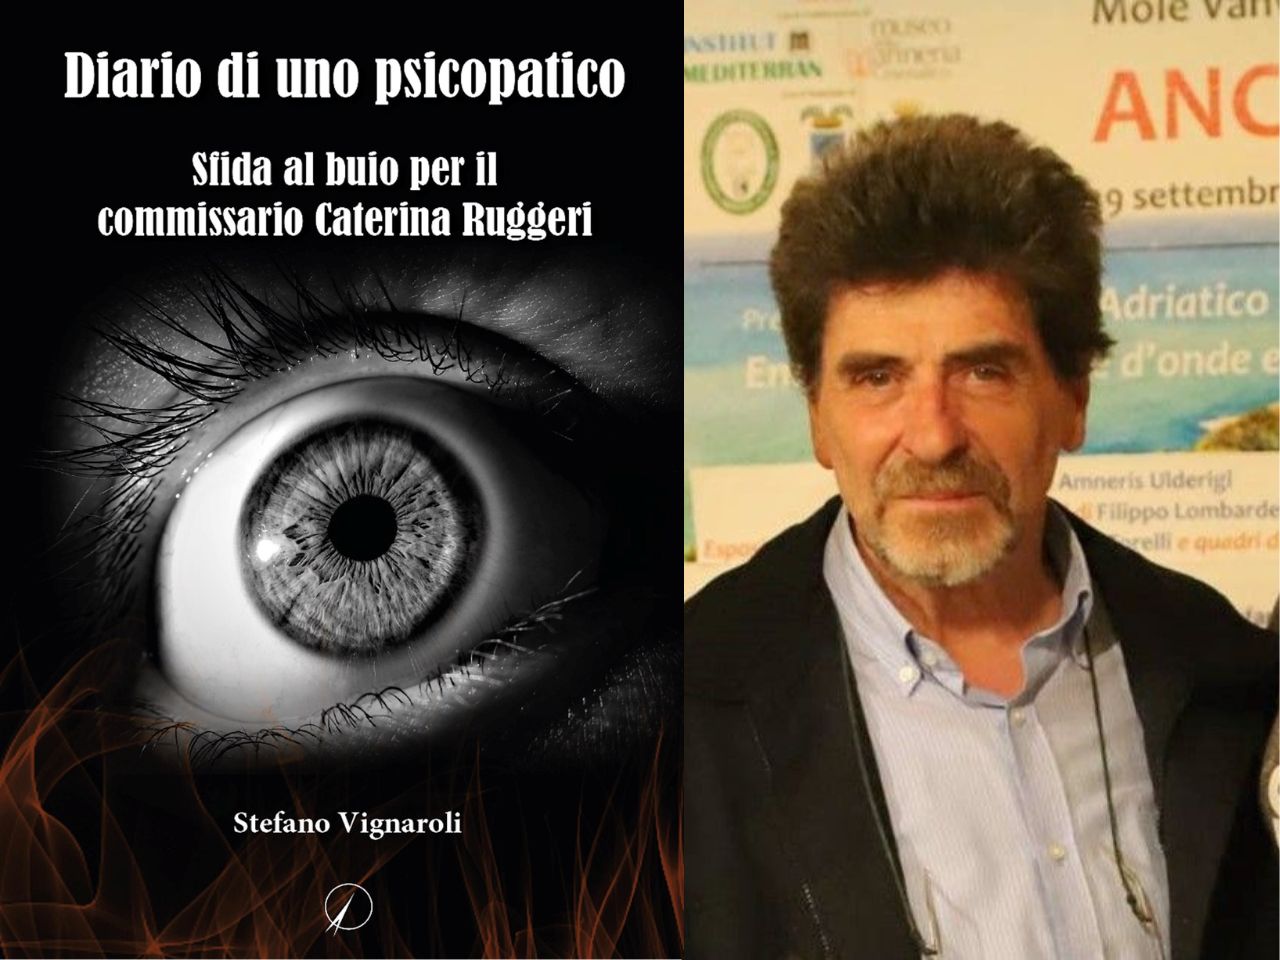 “Diario di uno psicopatico”: il libro dello jesino Stefano Vignaroli